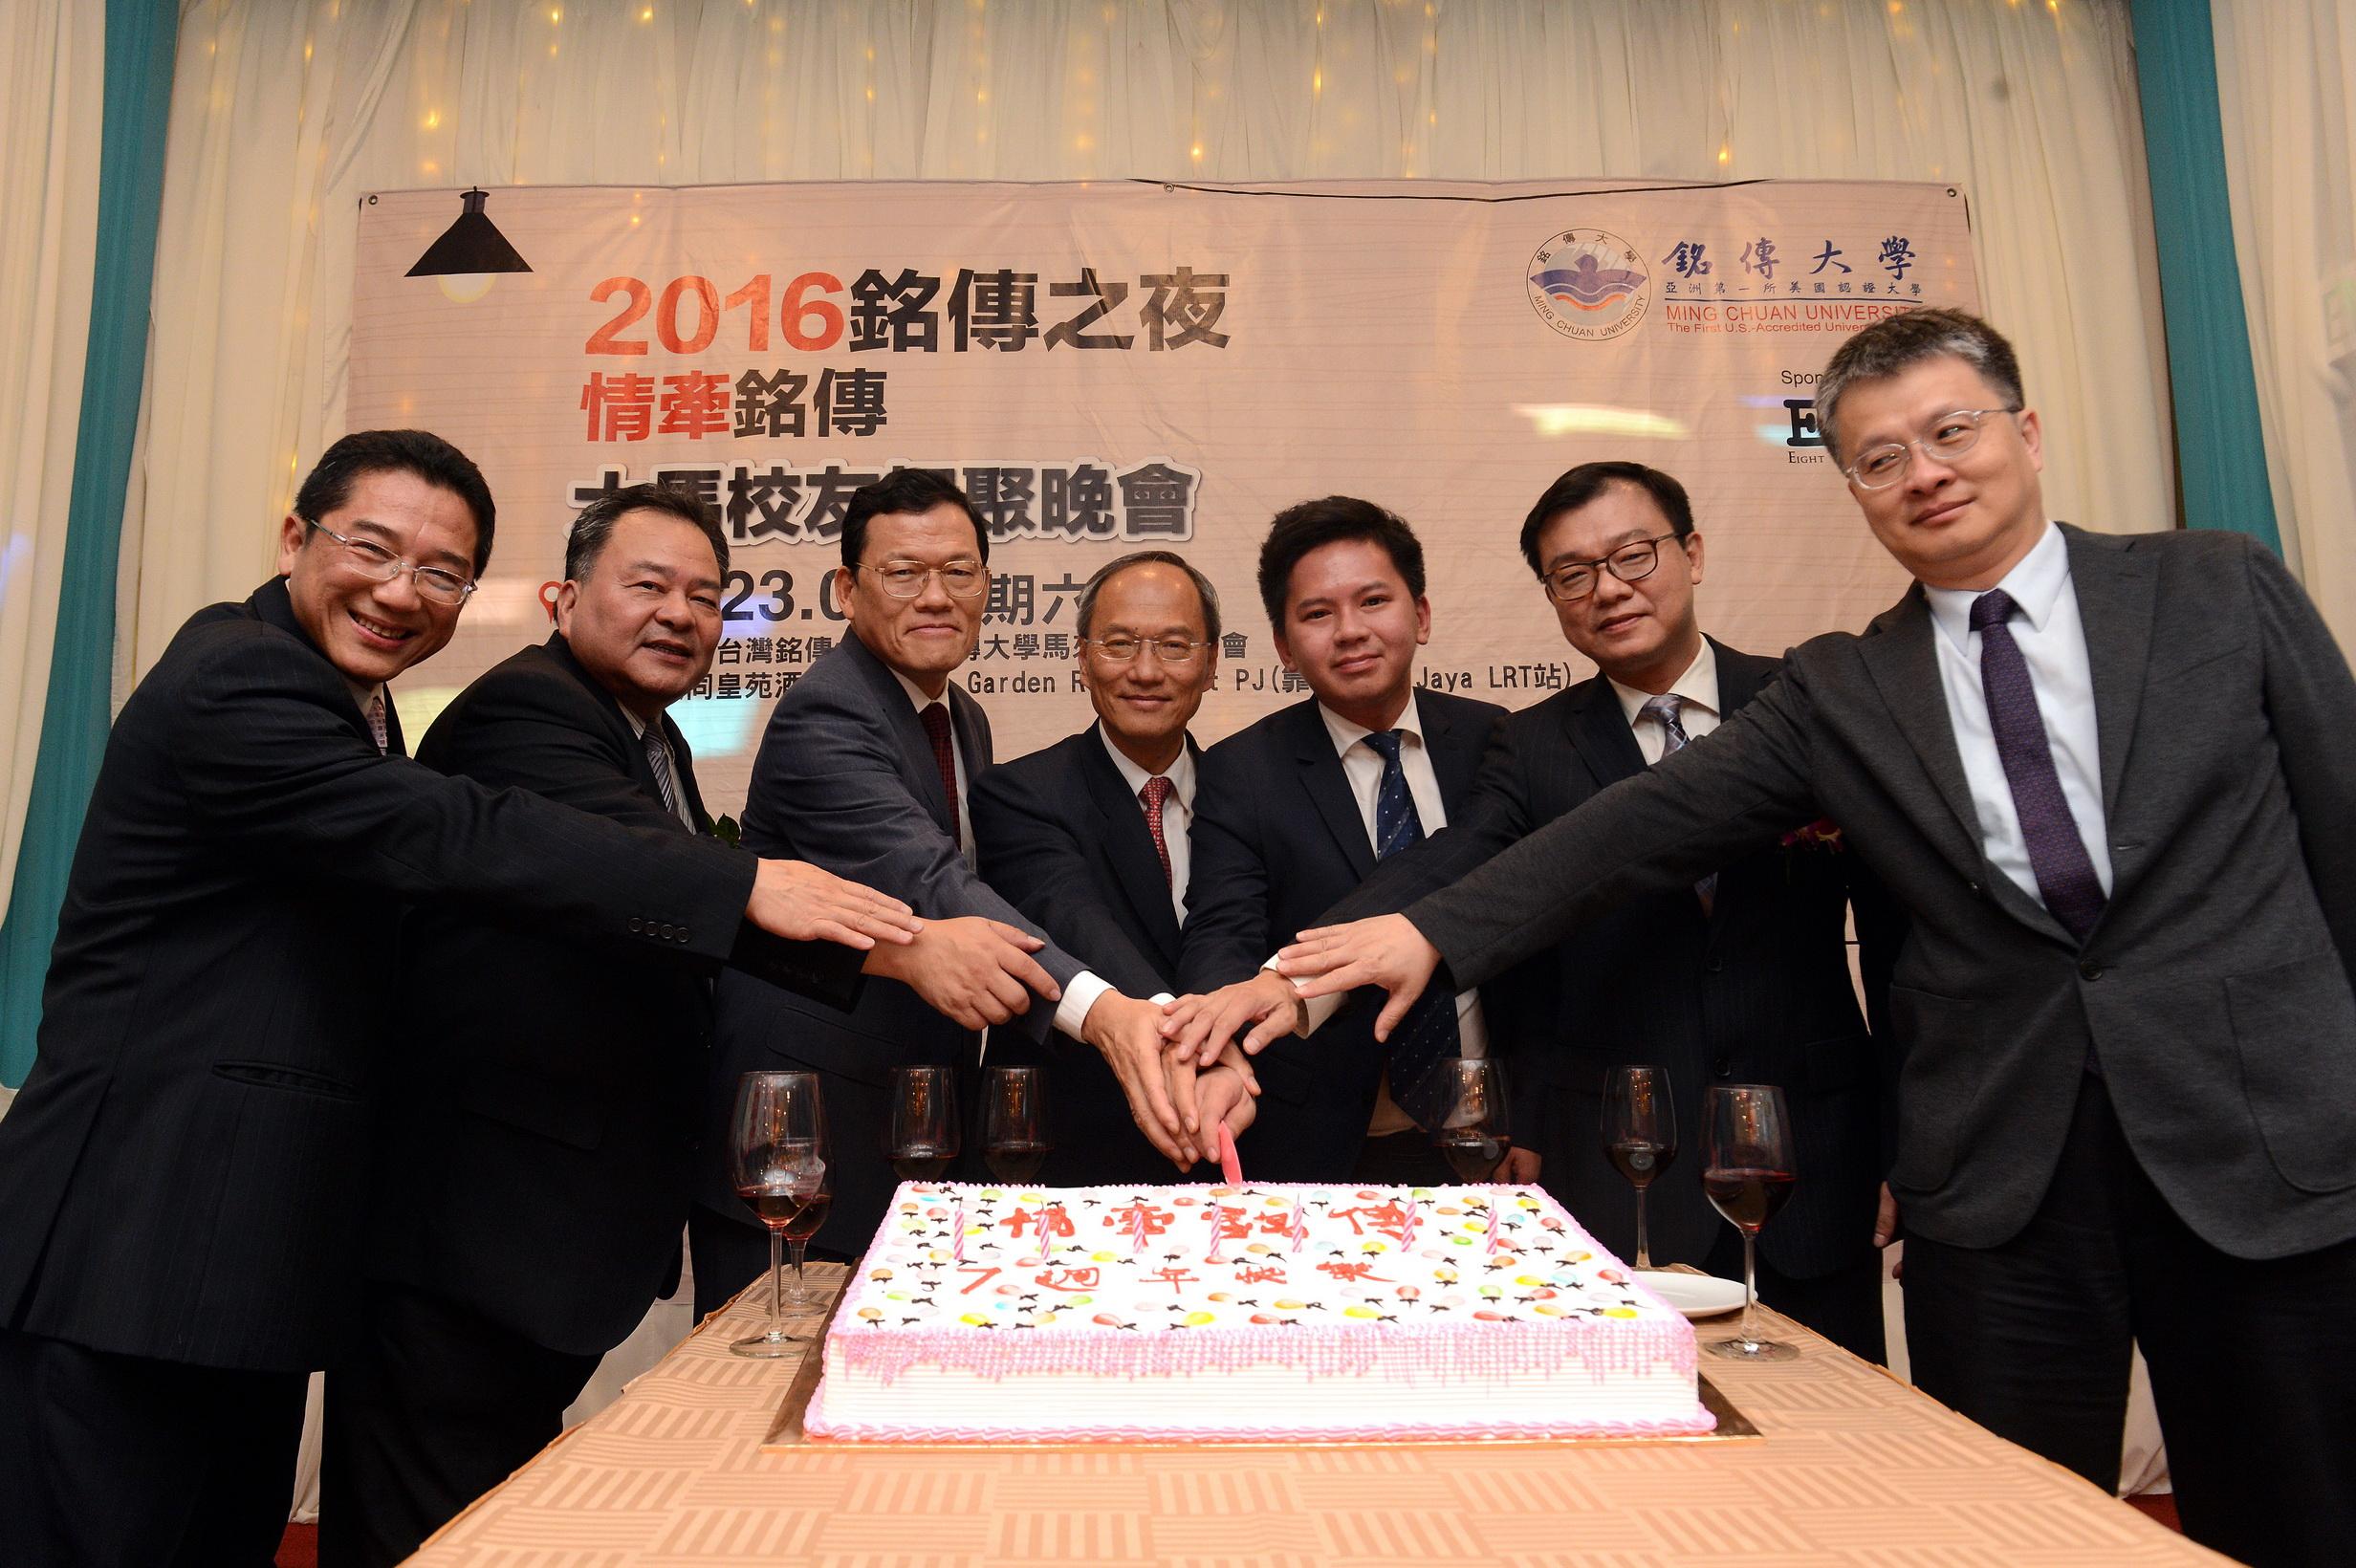 駐馬來西亞代表處章計平大使(左3)於4月23日參加「2016年銘傳之夜」晚宴，與銘傳大學社會科學院院長吳新興博士(中)及與會貴賓合切蛋糕慶賀。